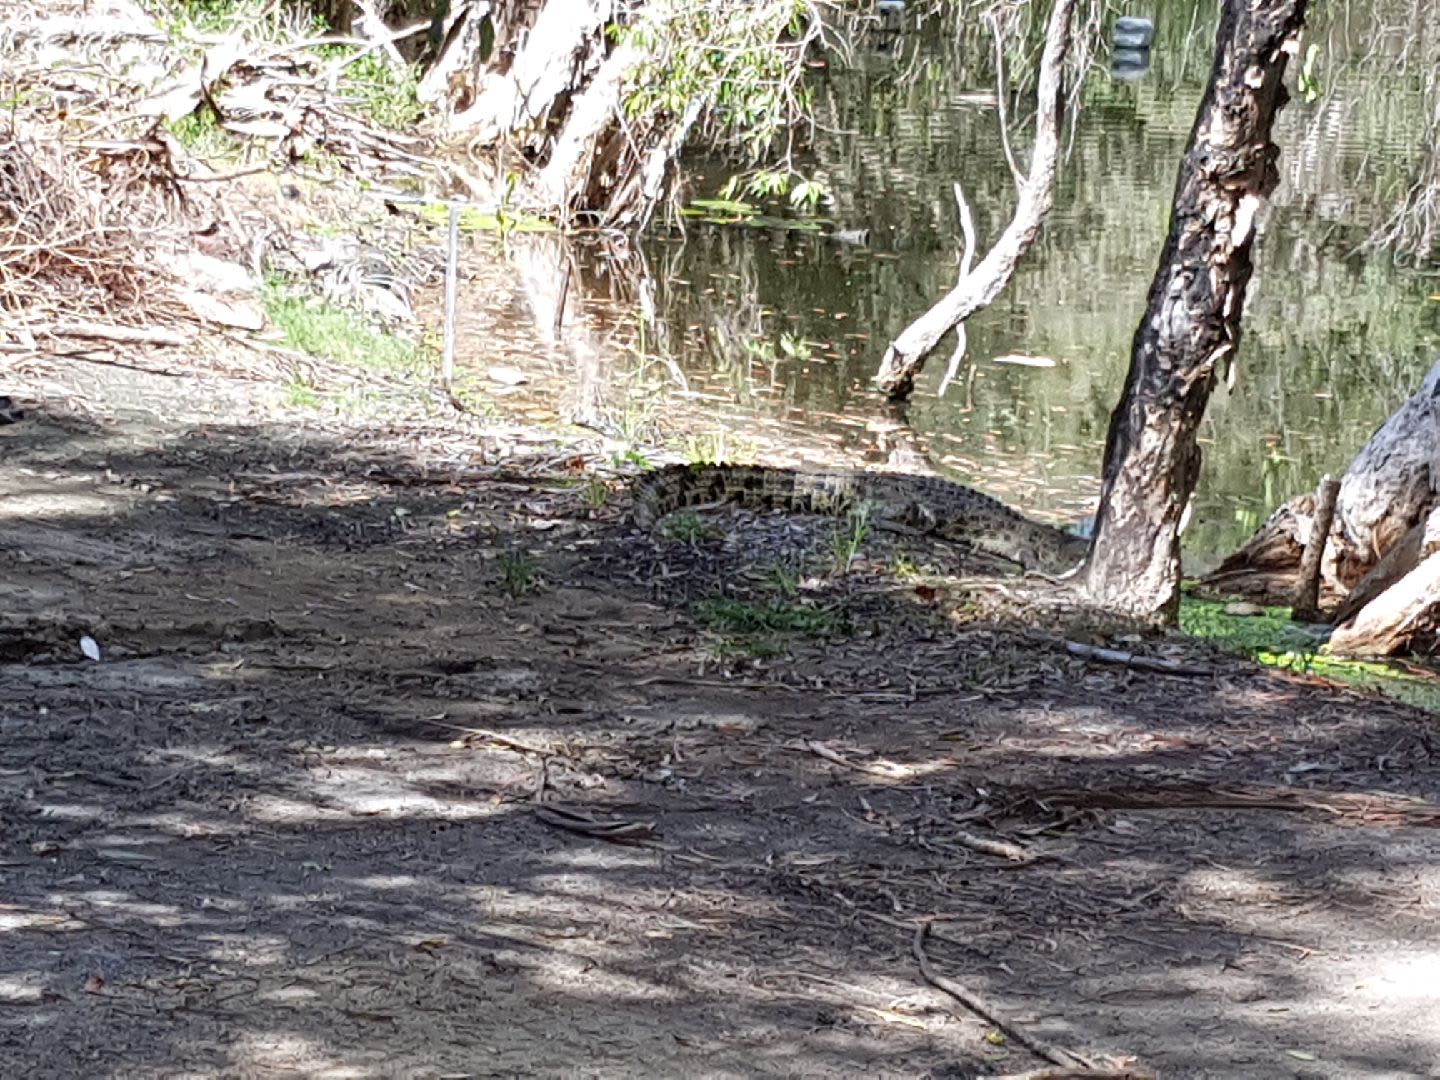 بين الثعابين والتماسيح وحيوانات الكنغر.. هكذا يكون لعب الغولف في أستراليا